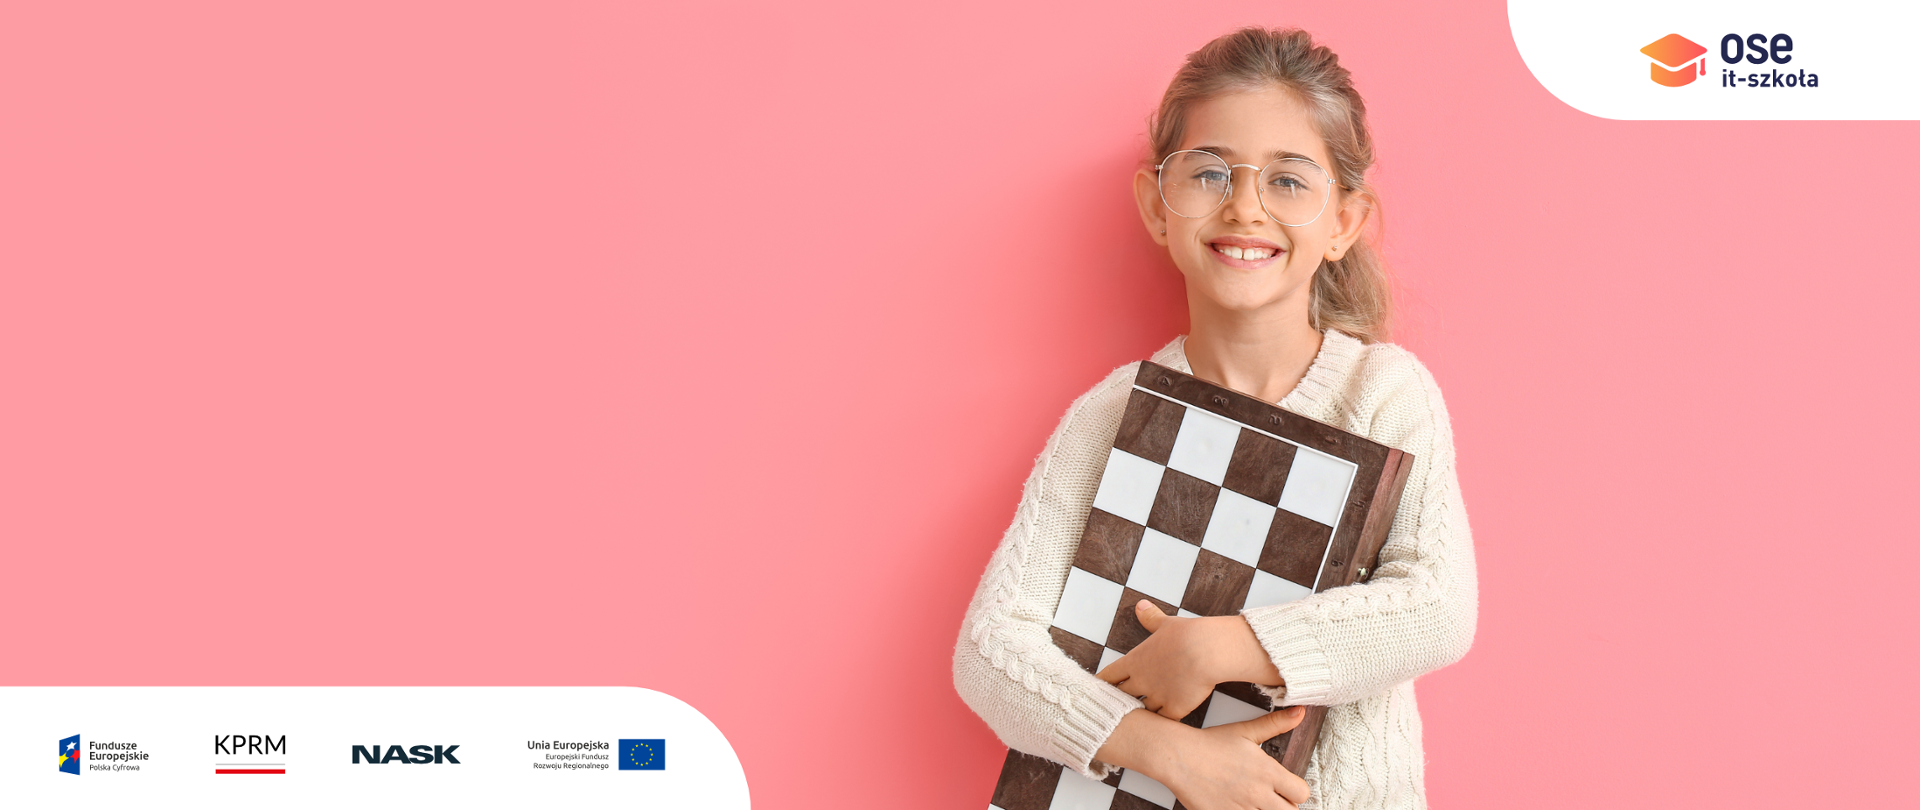 Grafika przedstawiająca dziewczynkę trzymającą złożoną szachownicę. Logotypy: OSE IT Szkoła, Fundusze Europejskie, KPRM, NASK, Unia Europejska.